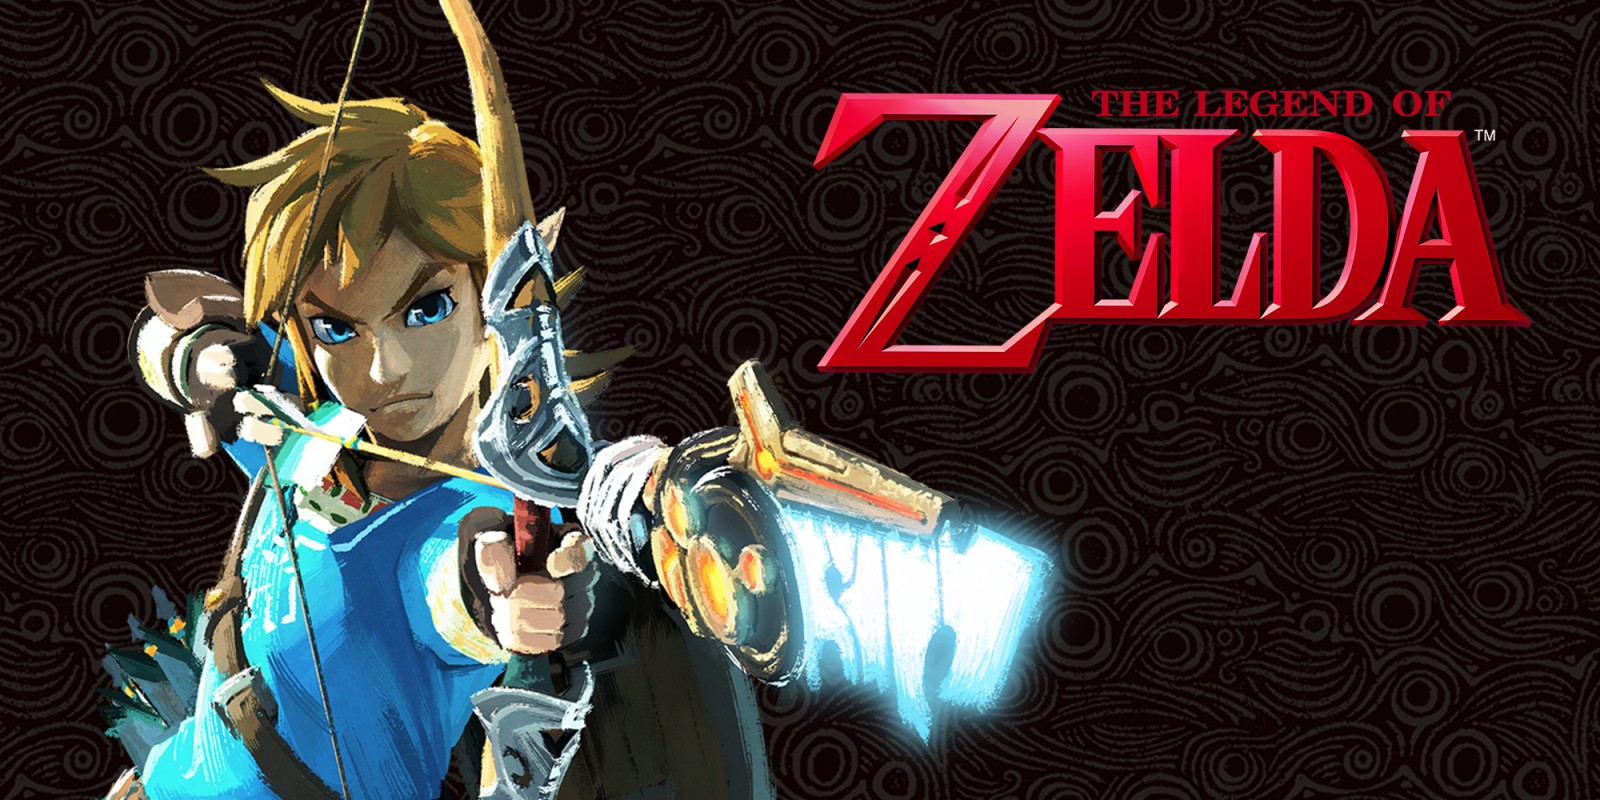 Legend of Zelda: veja as melhores curiosidades sobre a famosa franquia